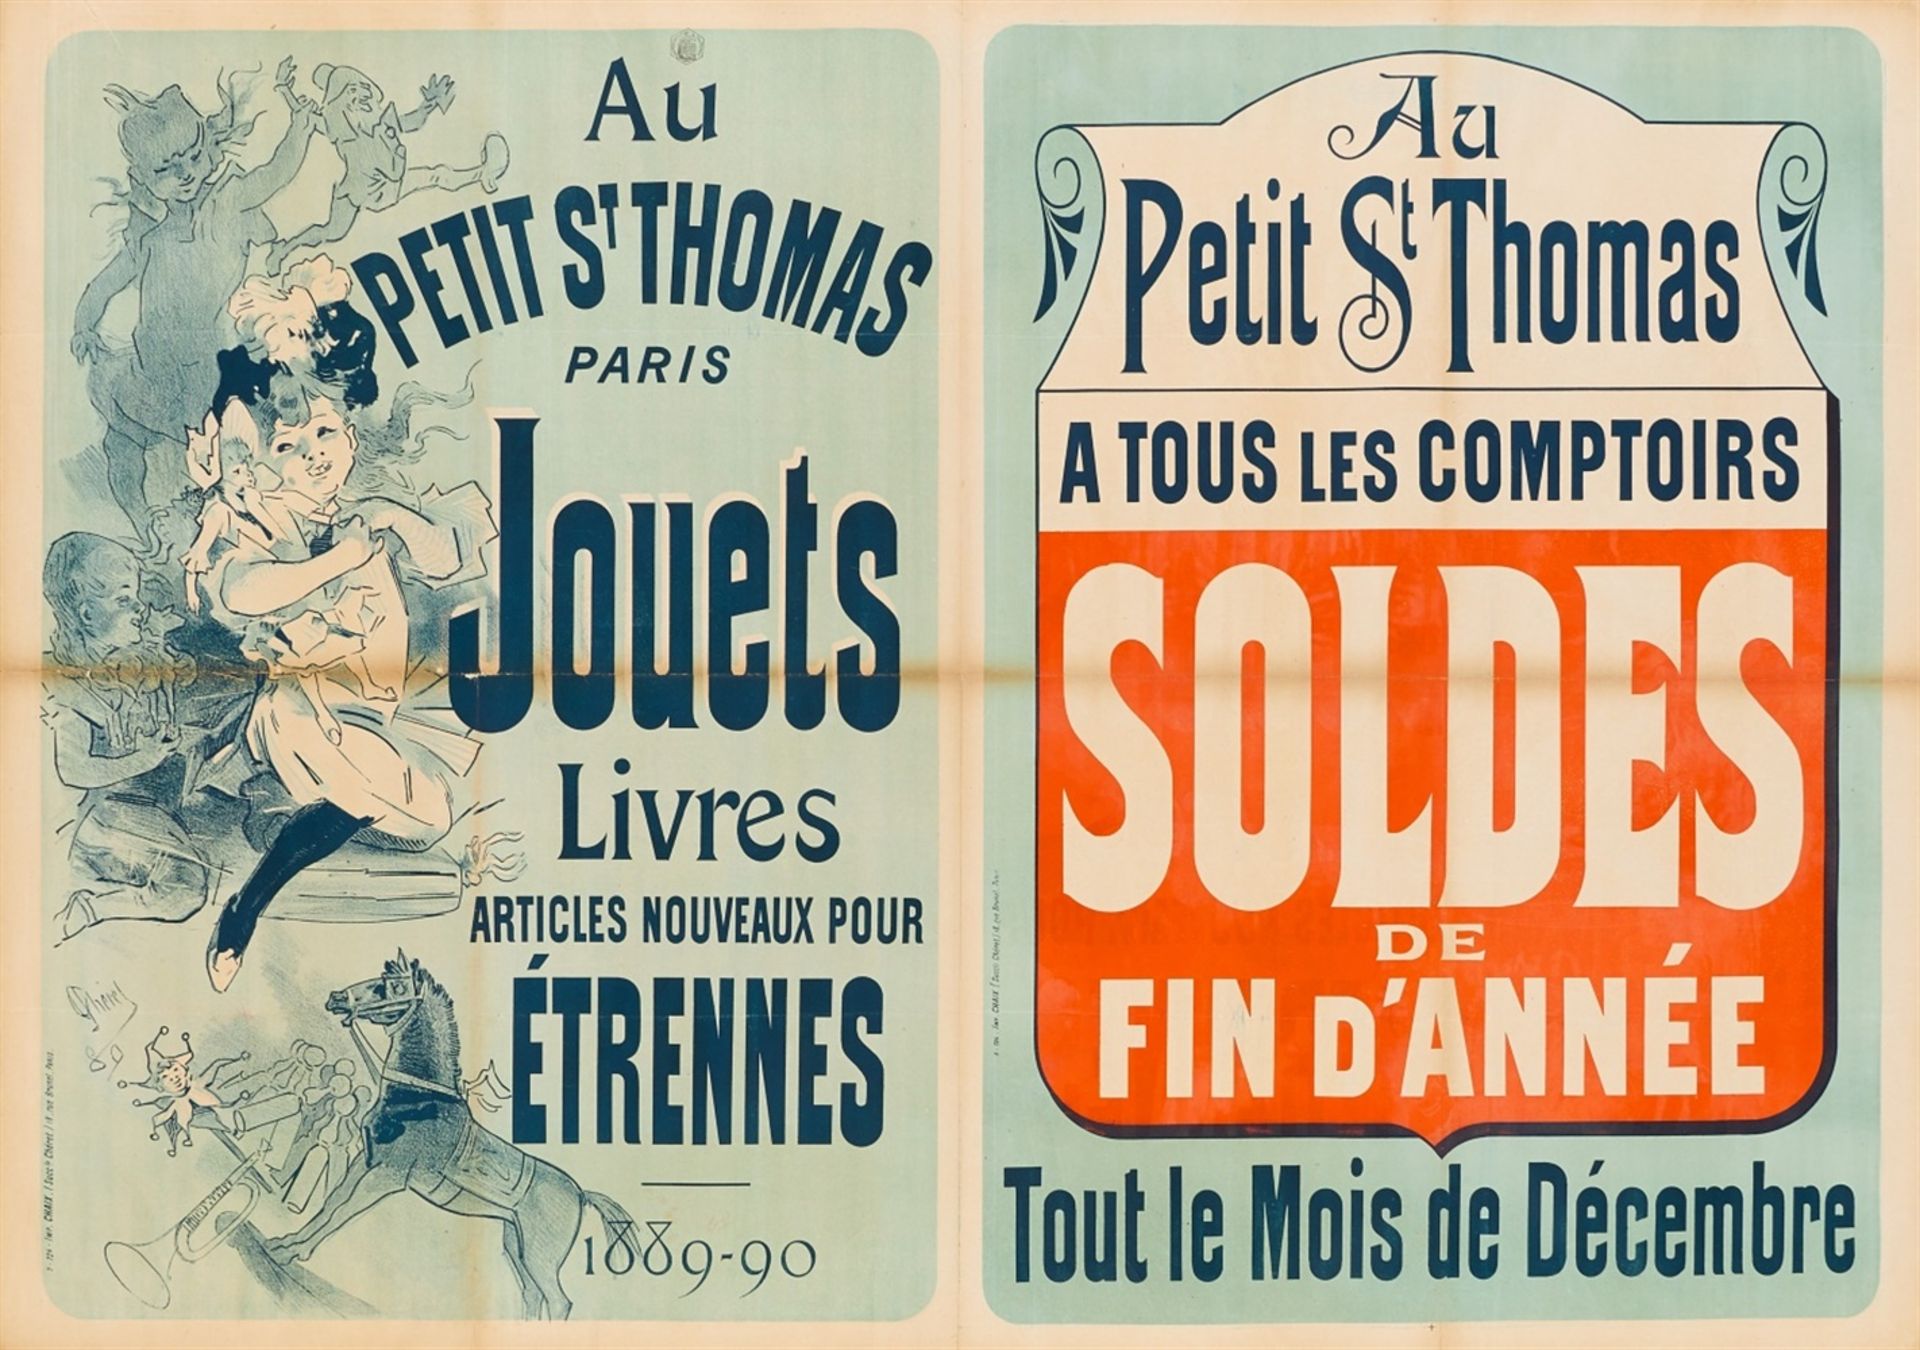 JULES CHÉRET 1836 - 1932AU PETIT ST THOMAS PARIS – JOUETS LIVRES ARTICLES NOUVEAUX POUR ÉTRENNES